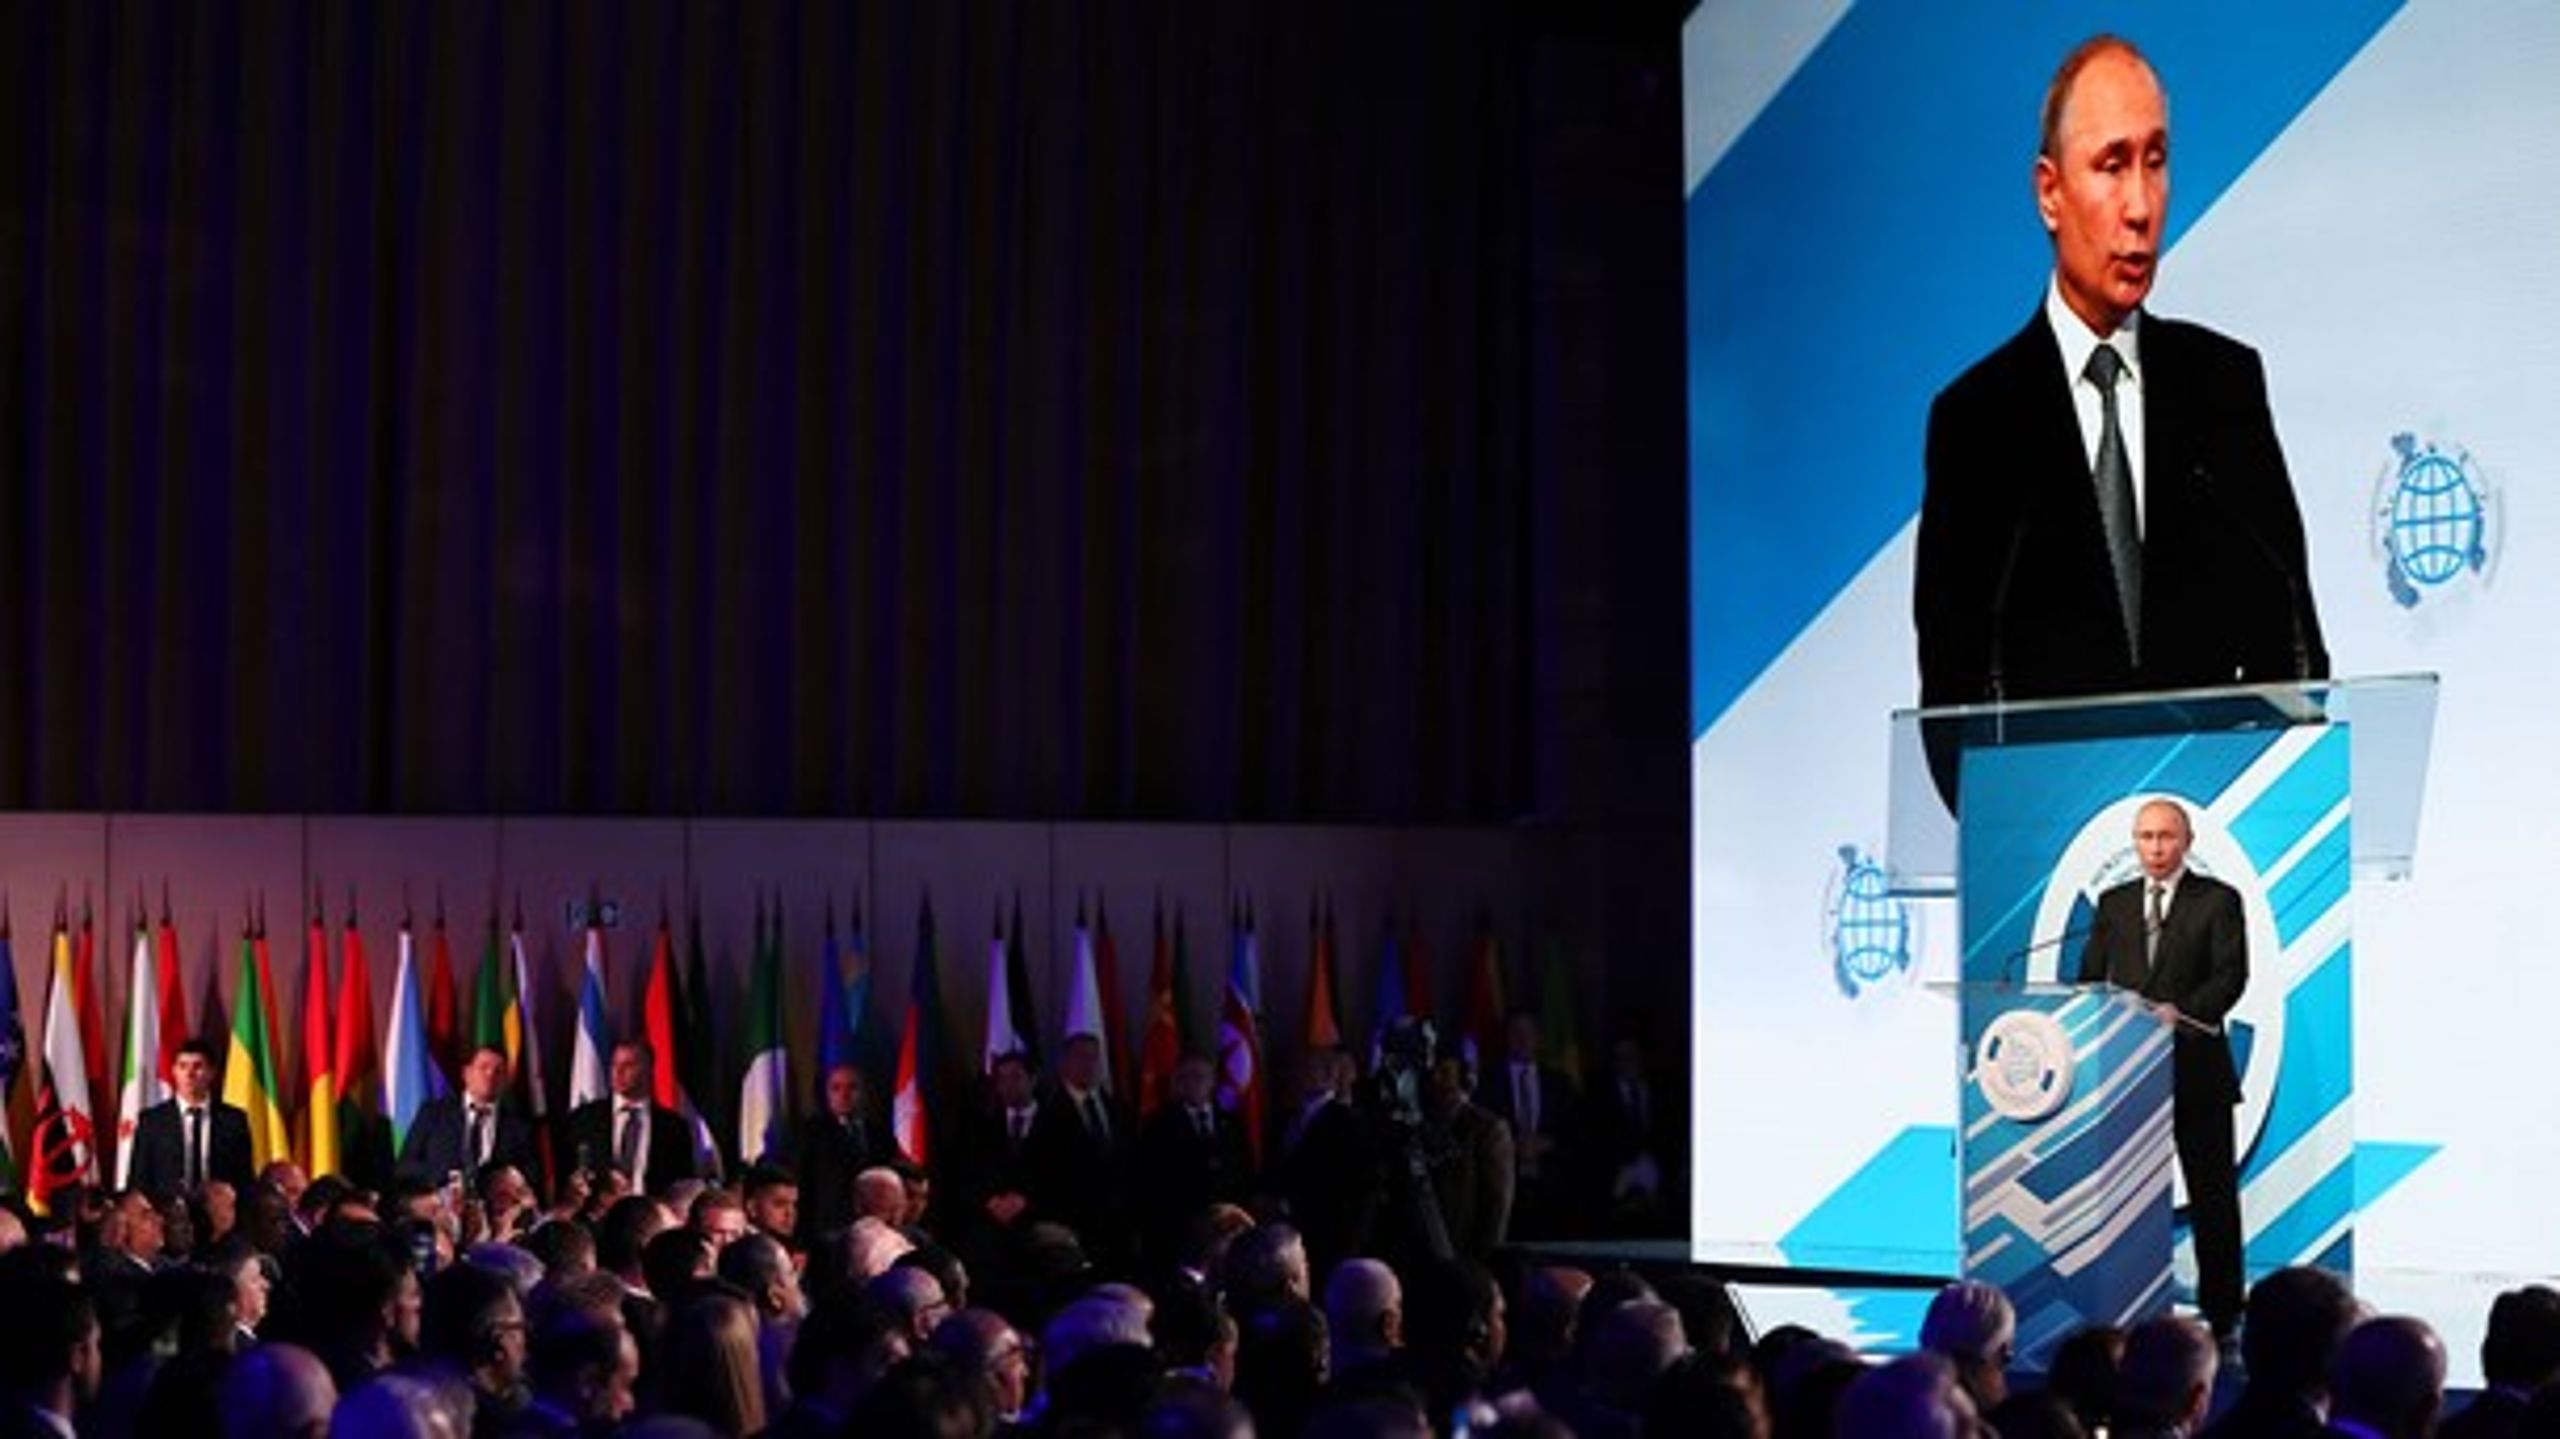 Ryska presidenten Vladimir Putin höll ett tal igår i Moskva&nbsp;på en konferens om utvecklingen av parlamentarism.